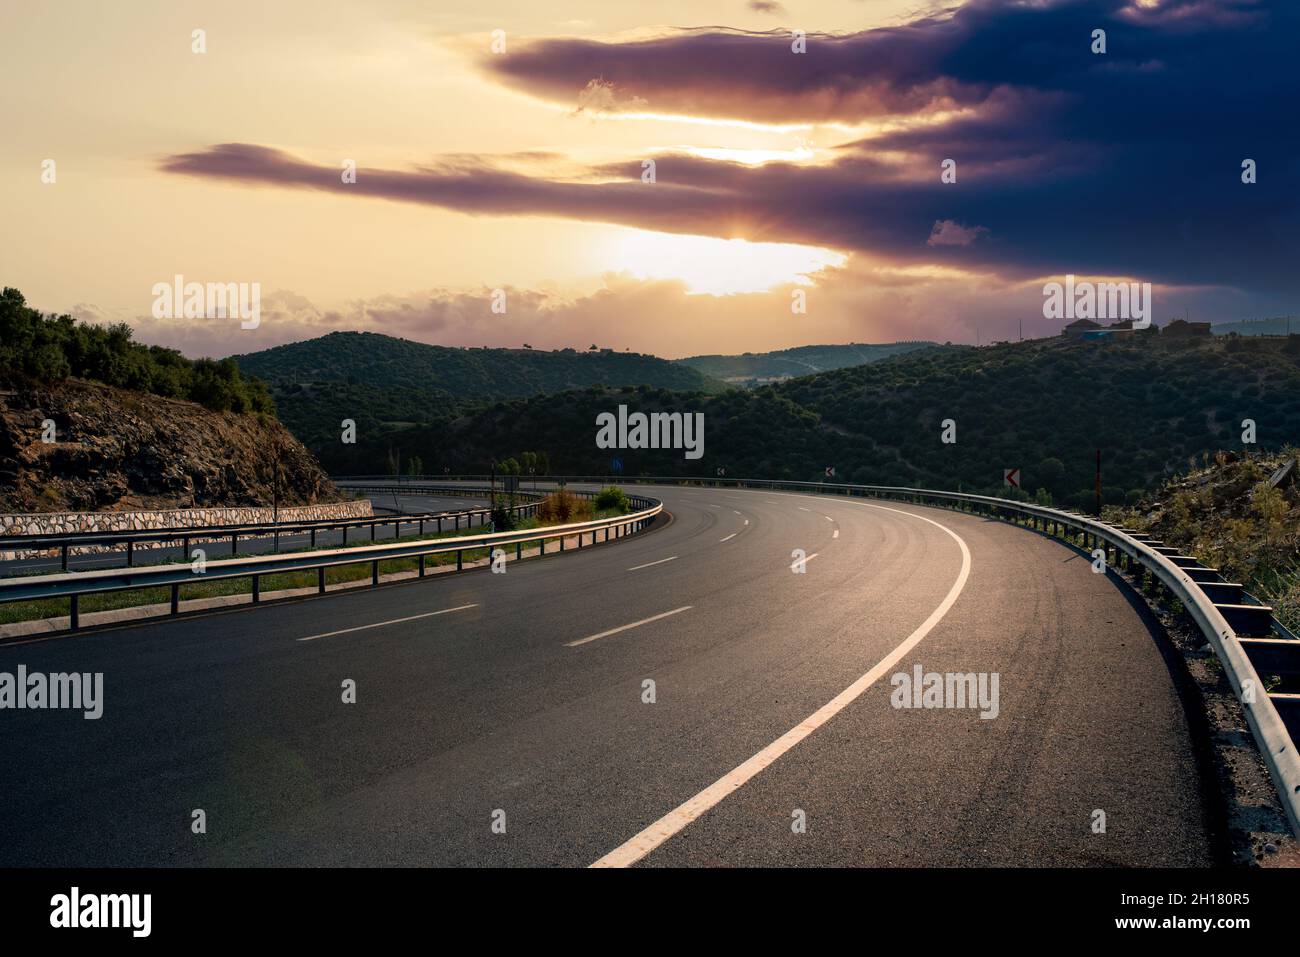 Strada asfaltata curva vuota con bel tramonto. Foto di alta qualità Foto Stock